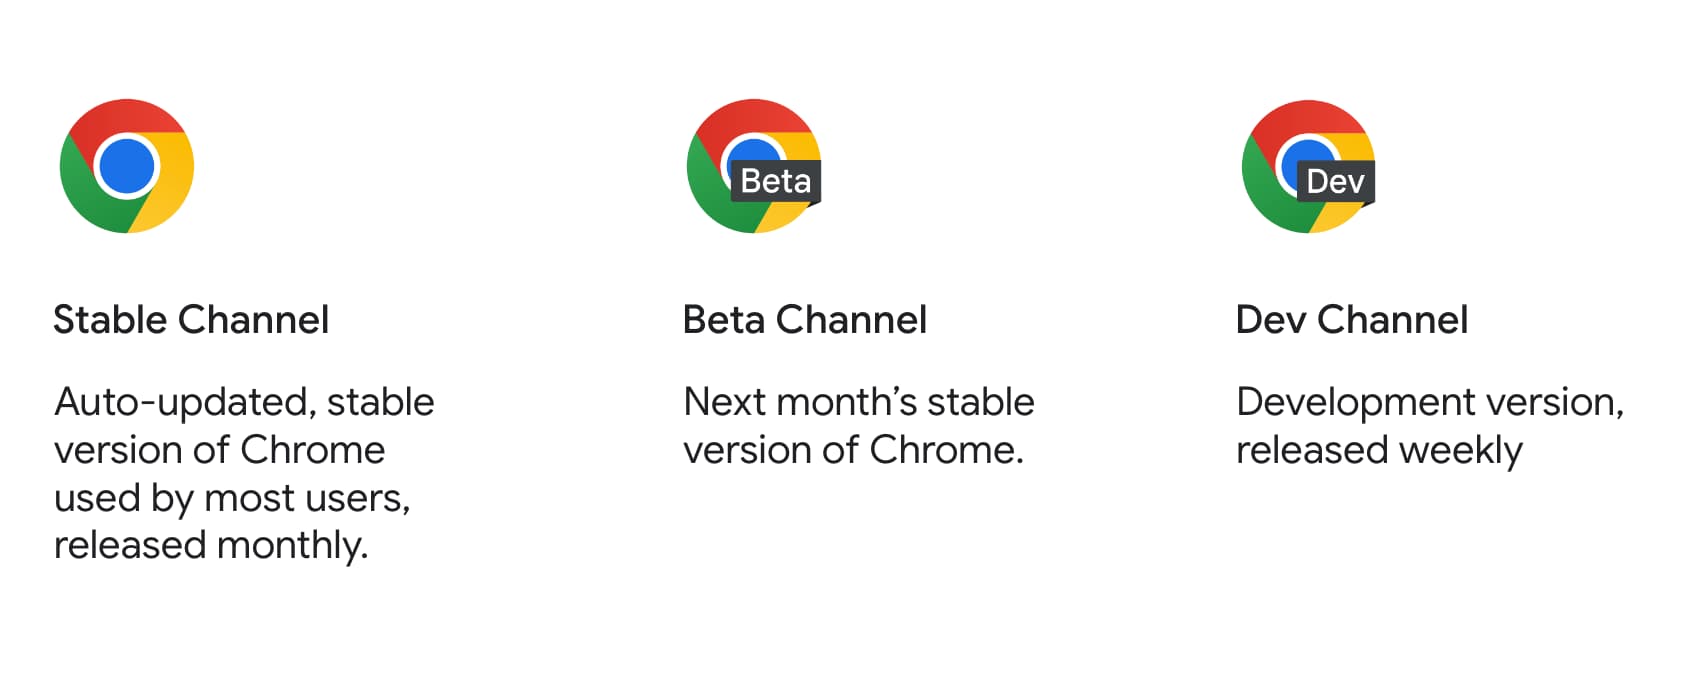 Ikony usług Chrome stabilnej, beta i dev wraz z ich opisem.